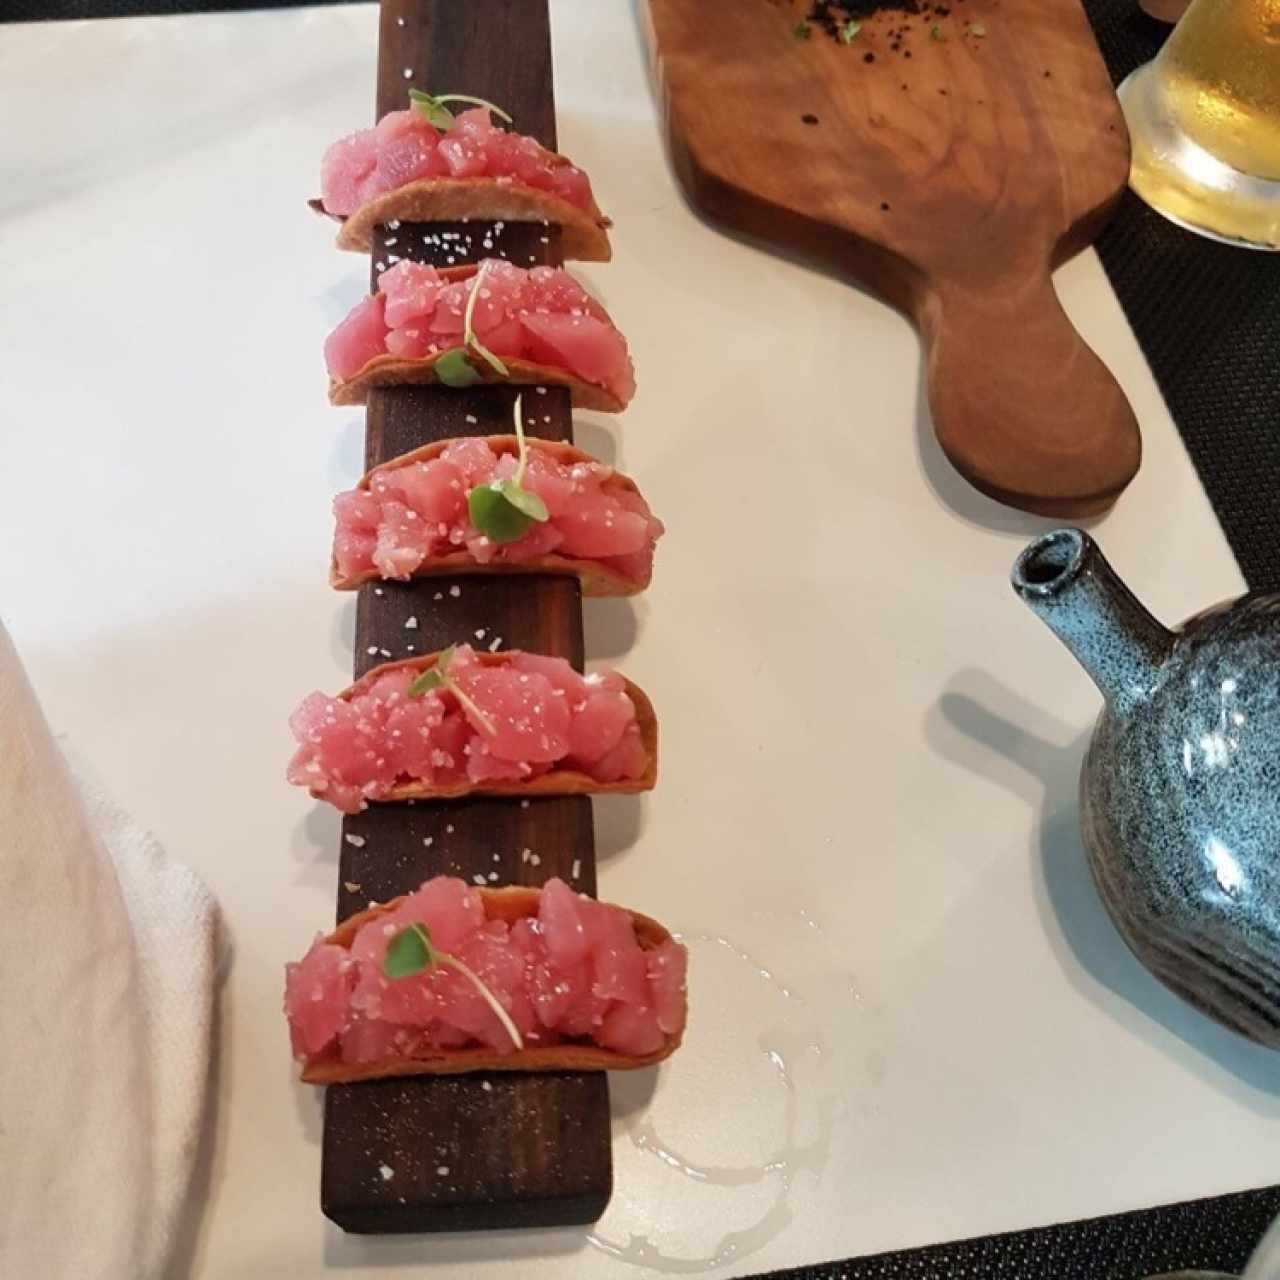 Tuna Taco